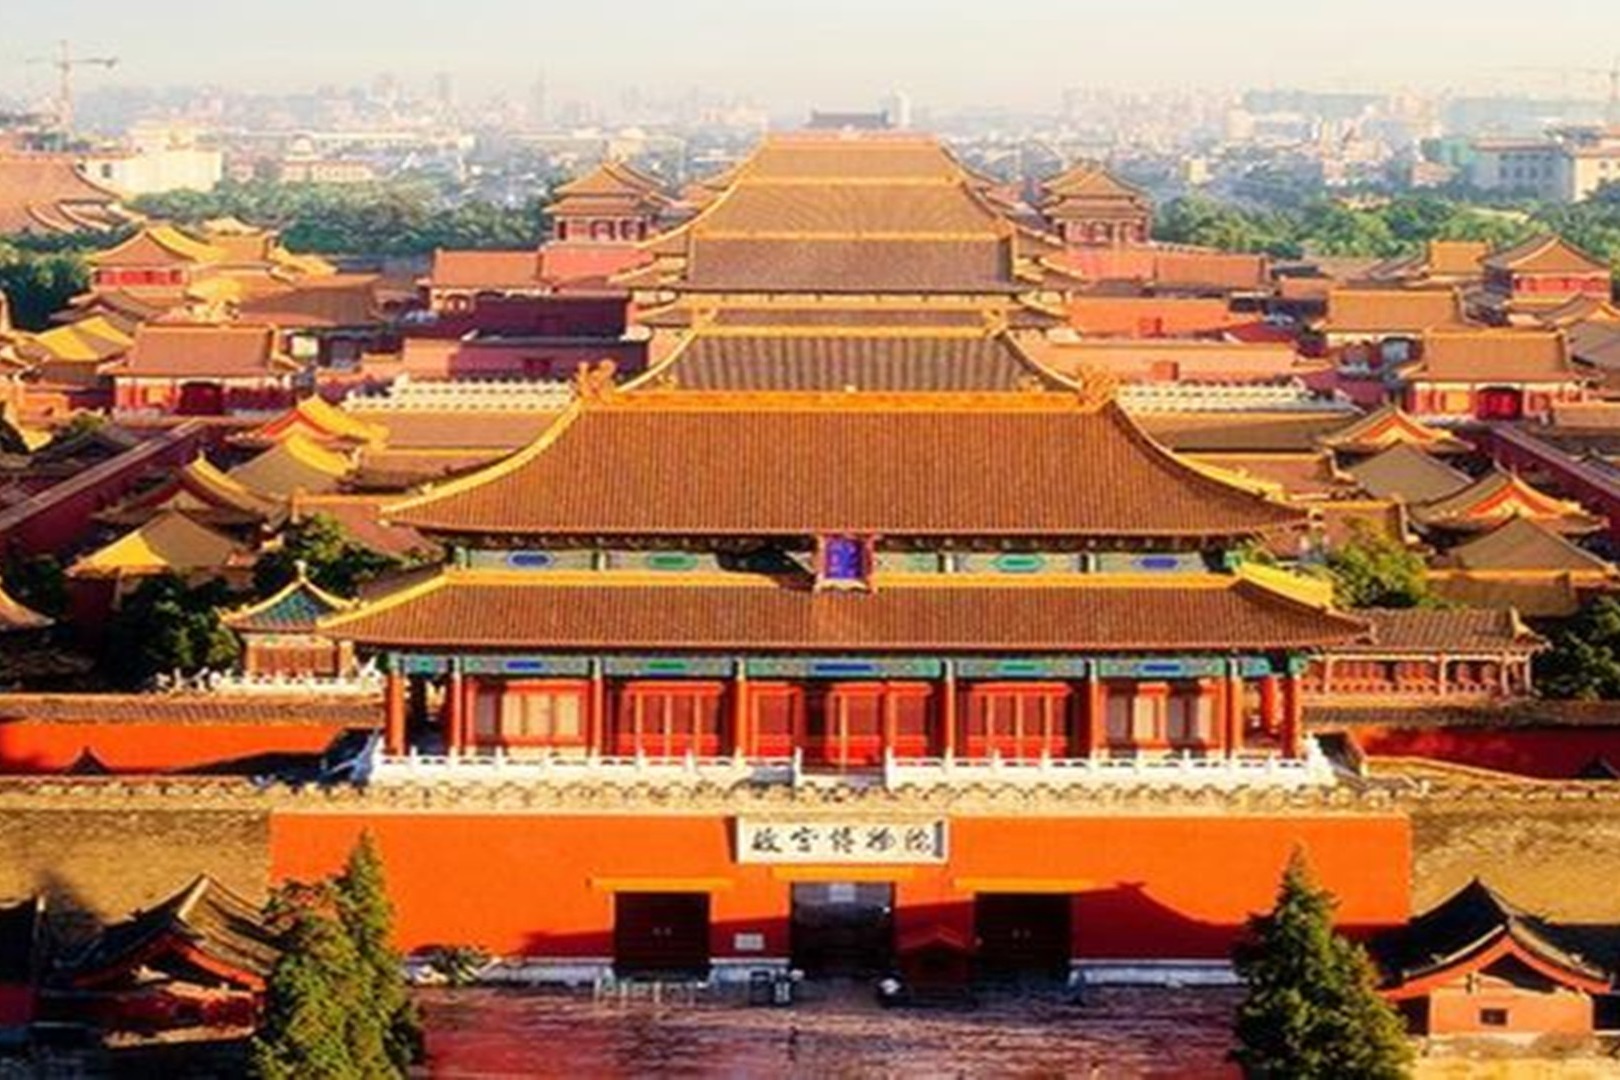 刘伯温在朱元璋时期就死了，那么他又怎么会帮朱棣修建紫禁城呢？